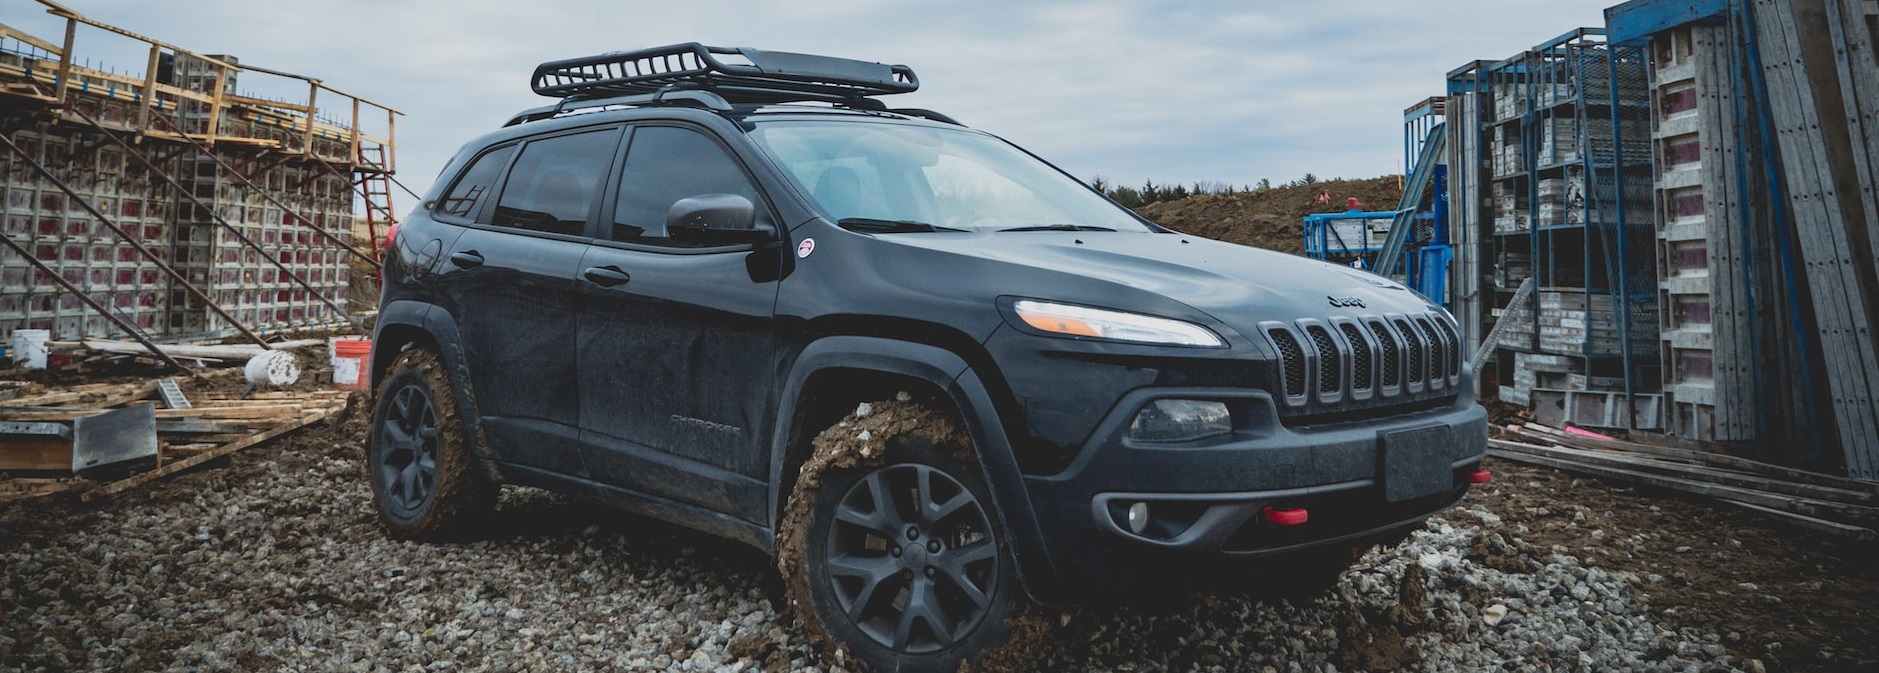 Black muddy SUV | Breast Cancer Car Donations